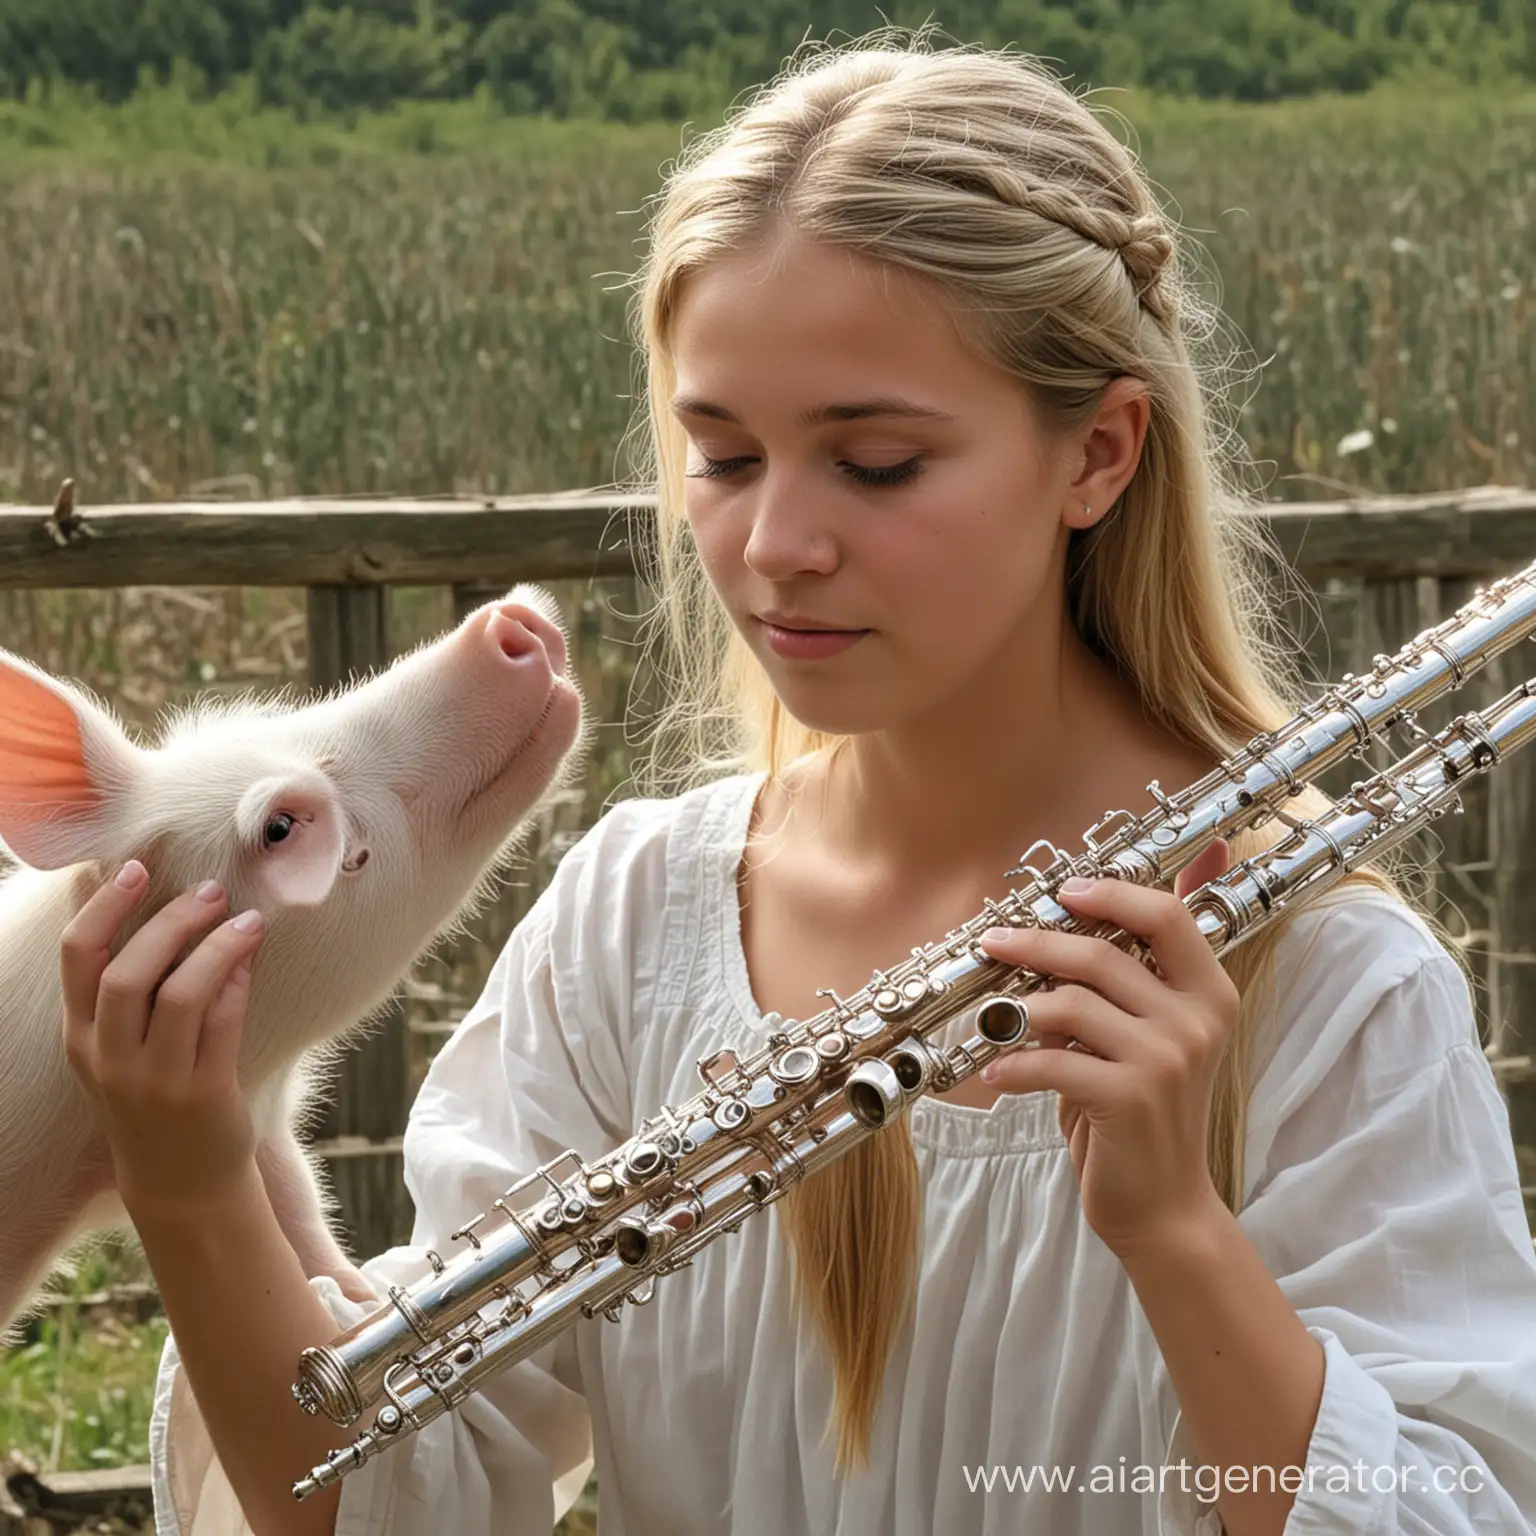 А вот юная леди ,
На серебряной флейте играет она
Удивительная леди ,
Для белых дядиных свиней подарила музыку она.
